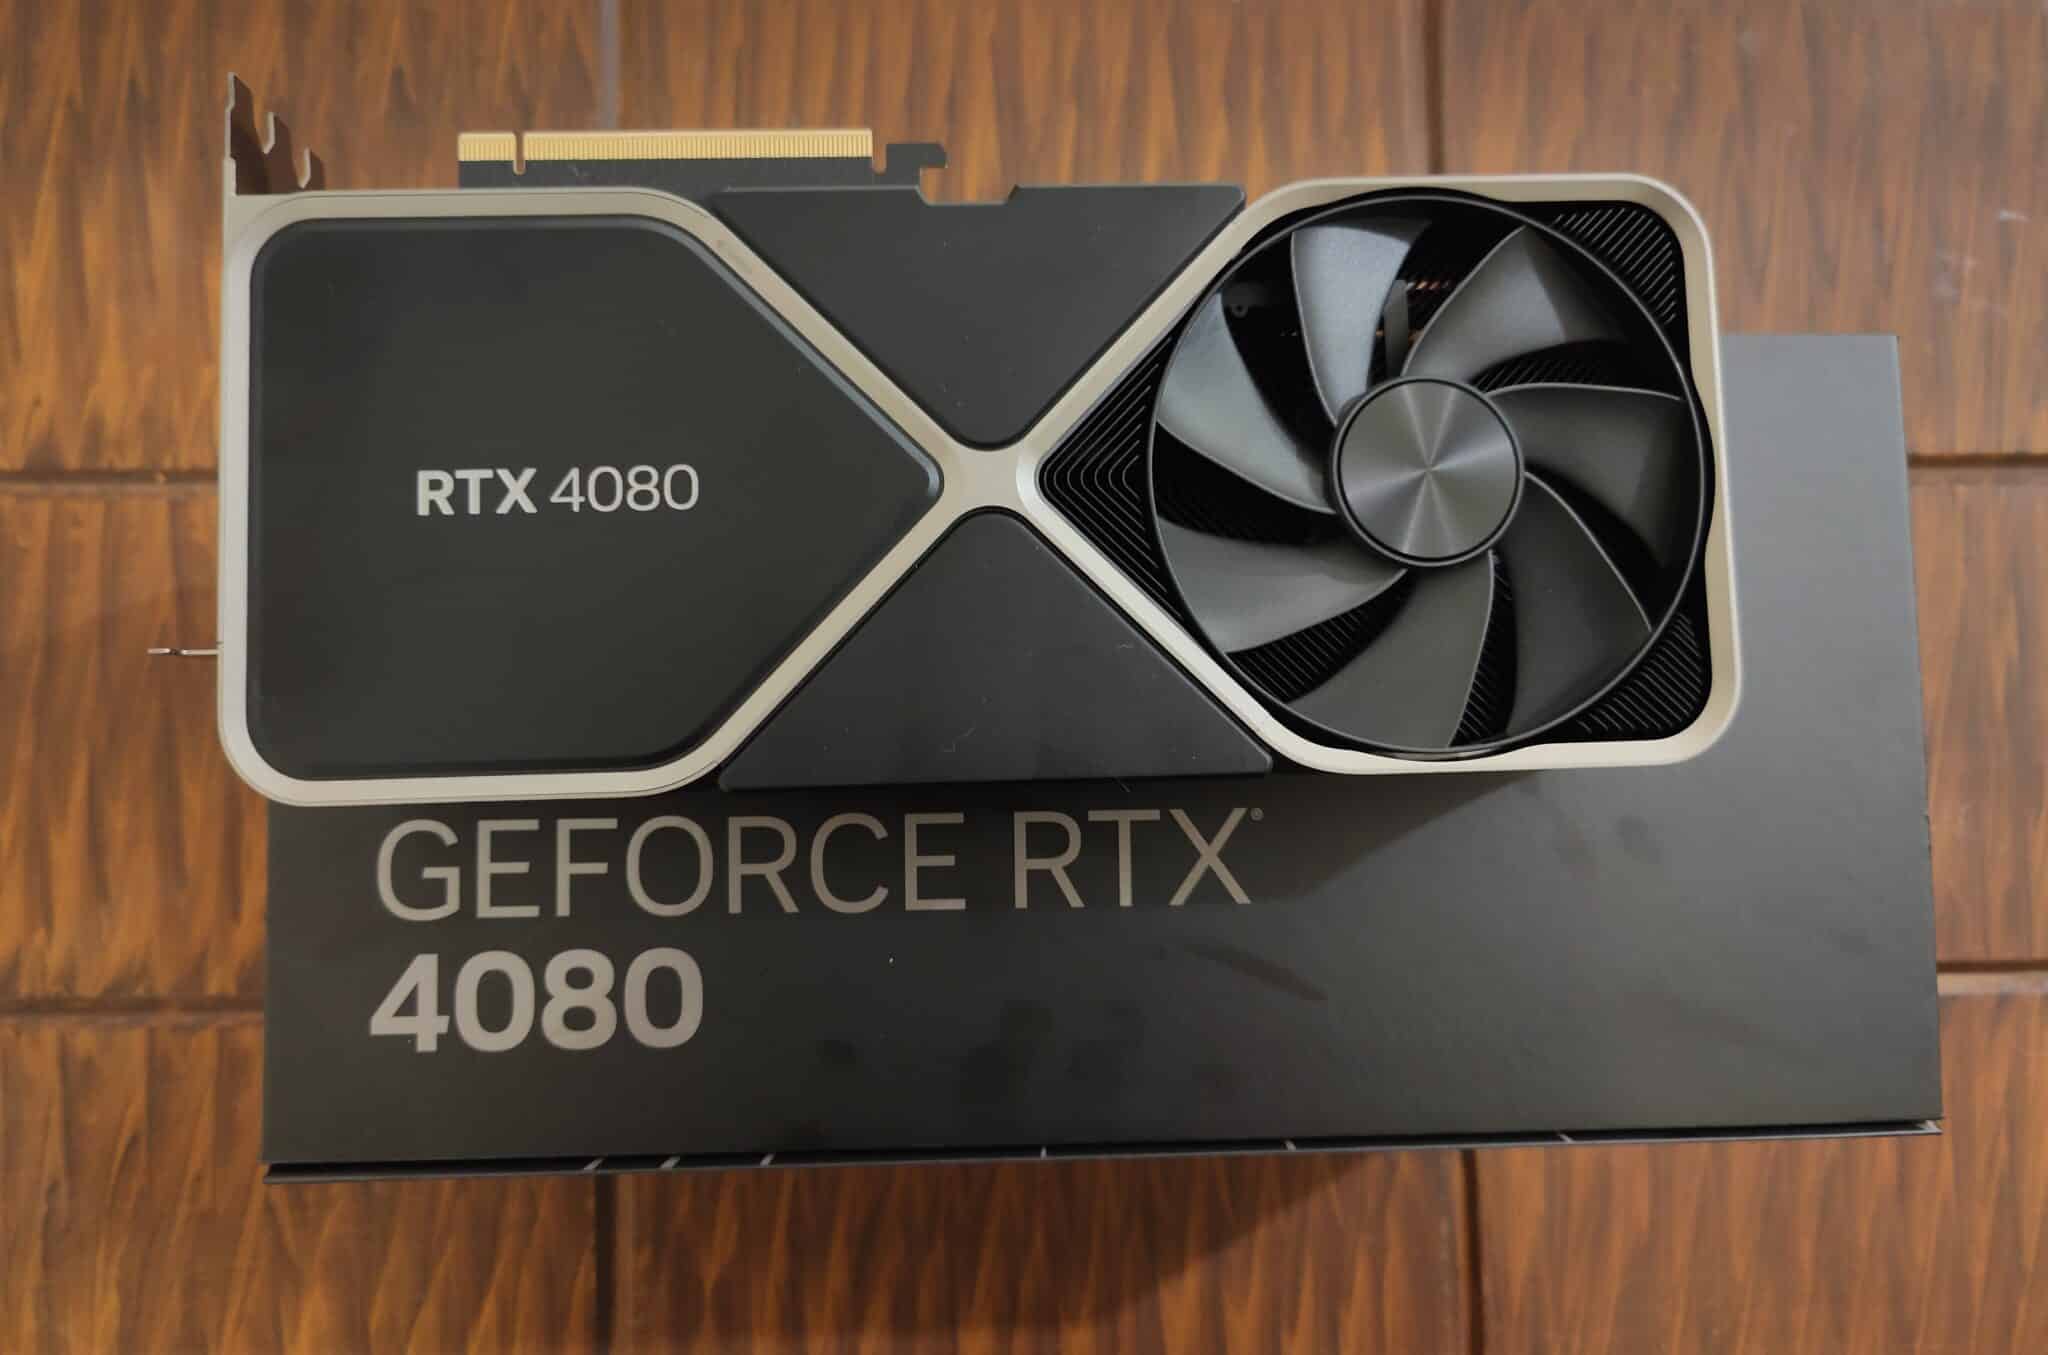 RTX 4090, RTX 4080 GPU Price and Release + More